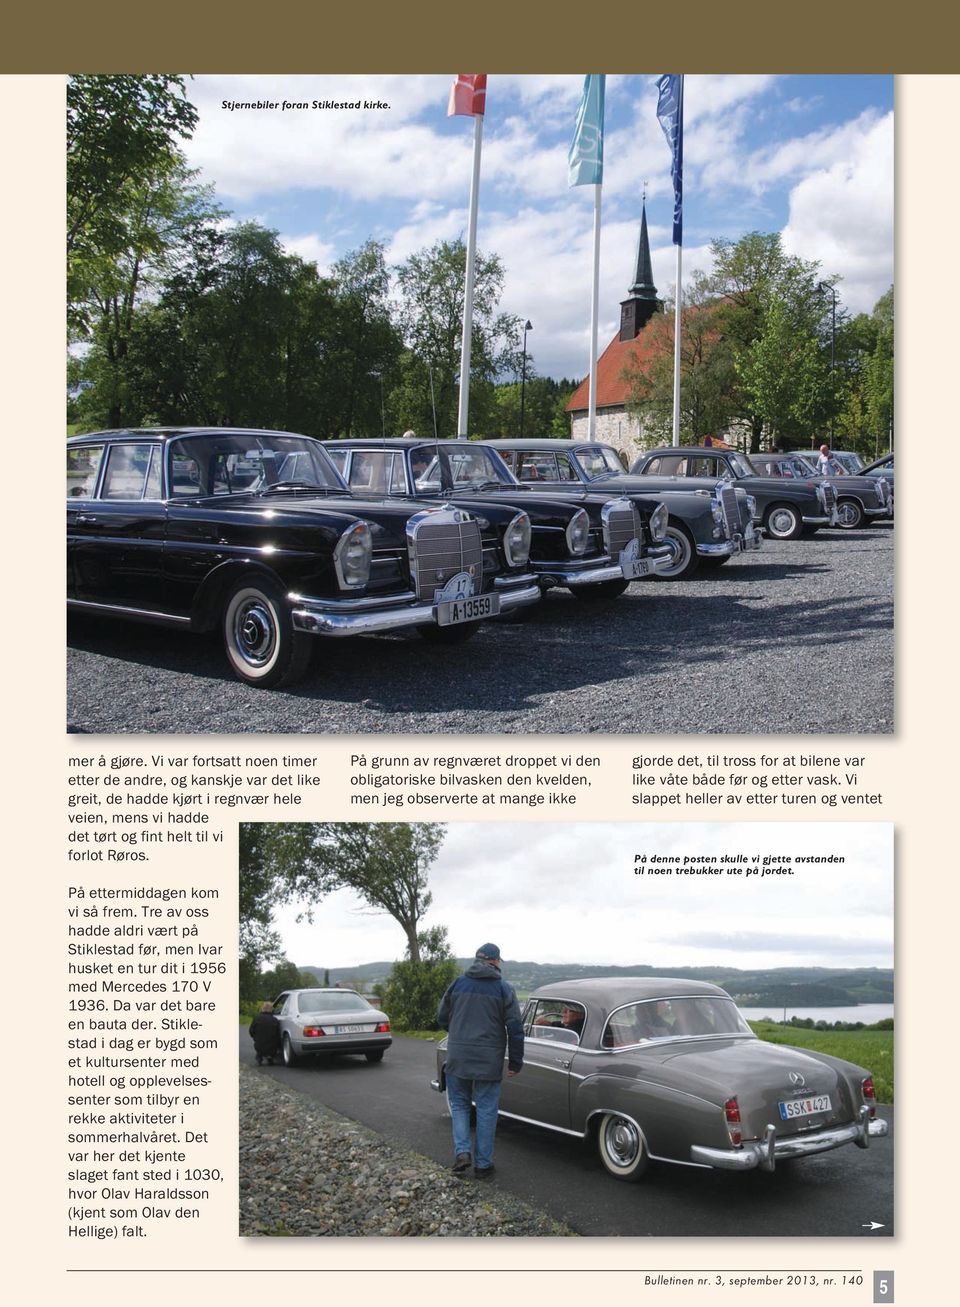 Tre av oss hadde aldri vært på Stiklestad før, men Ivar husket en tur dit i 1956 med Mercedes 170 V 1936. Da var det bare en bauta der.